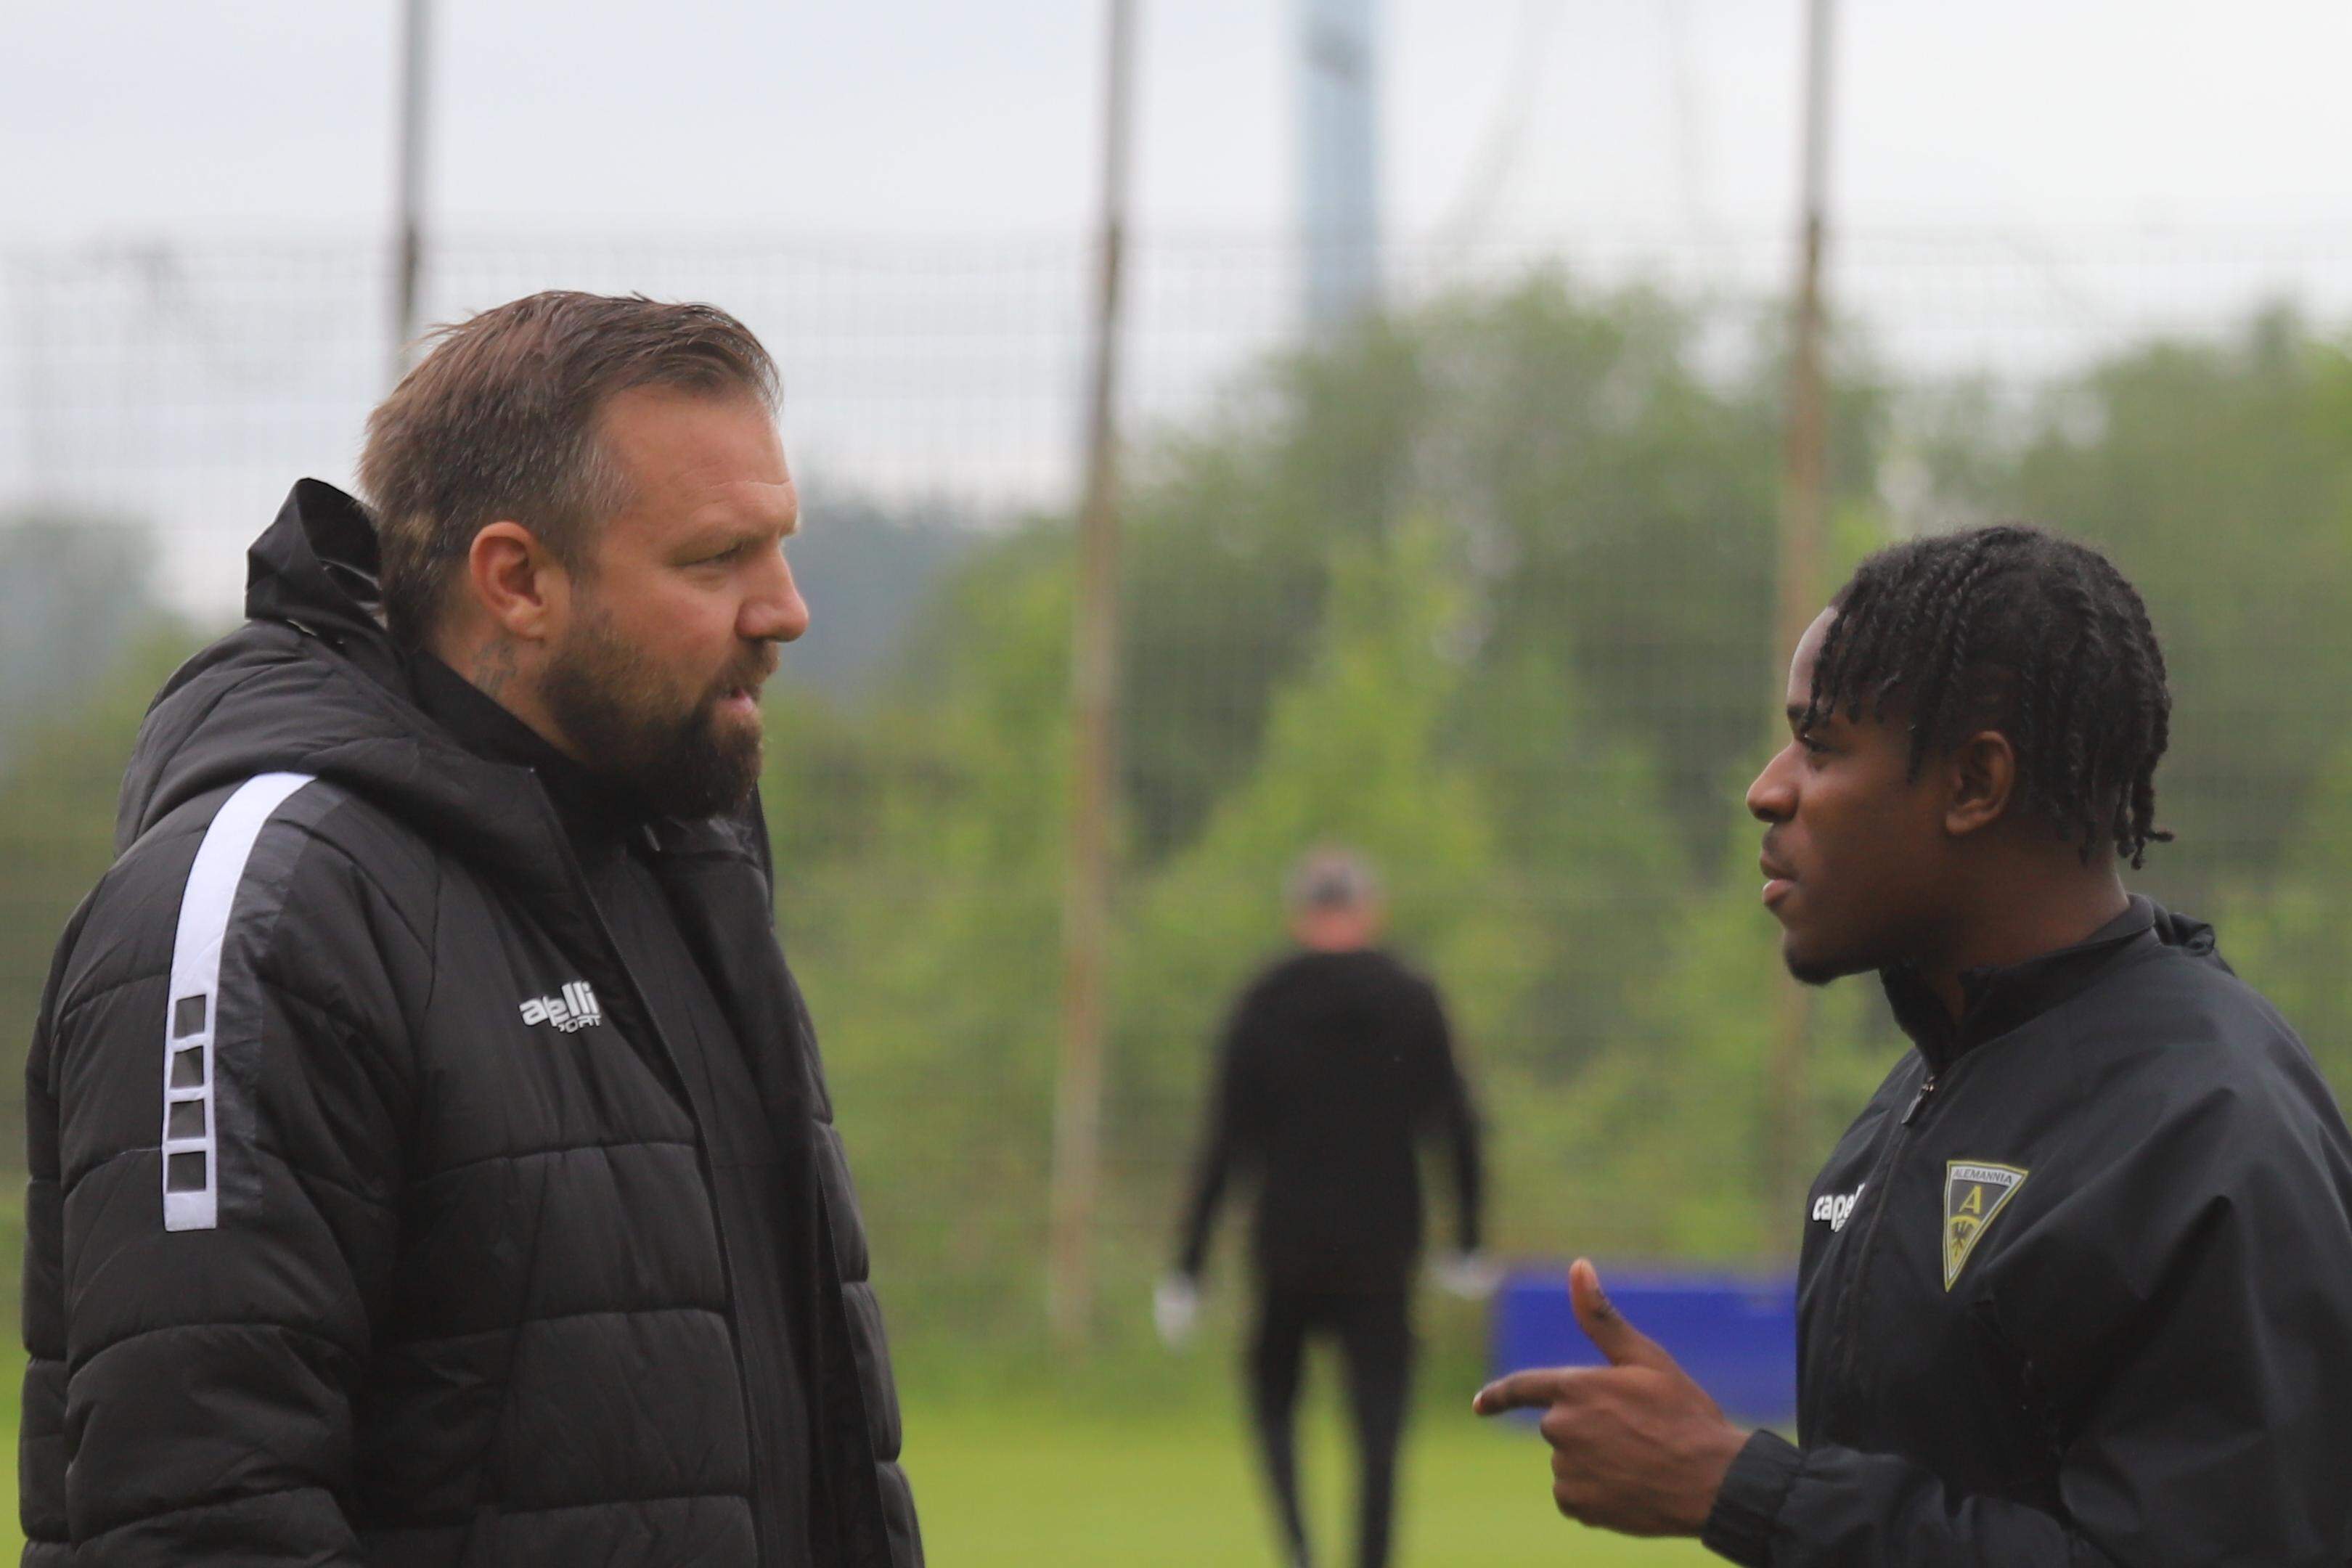 Herzlich willkommen: Aachens Trainer Heiner Backhaus begrüßt den Gastspieler Wesley Frimpong.